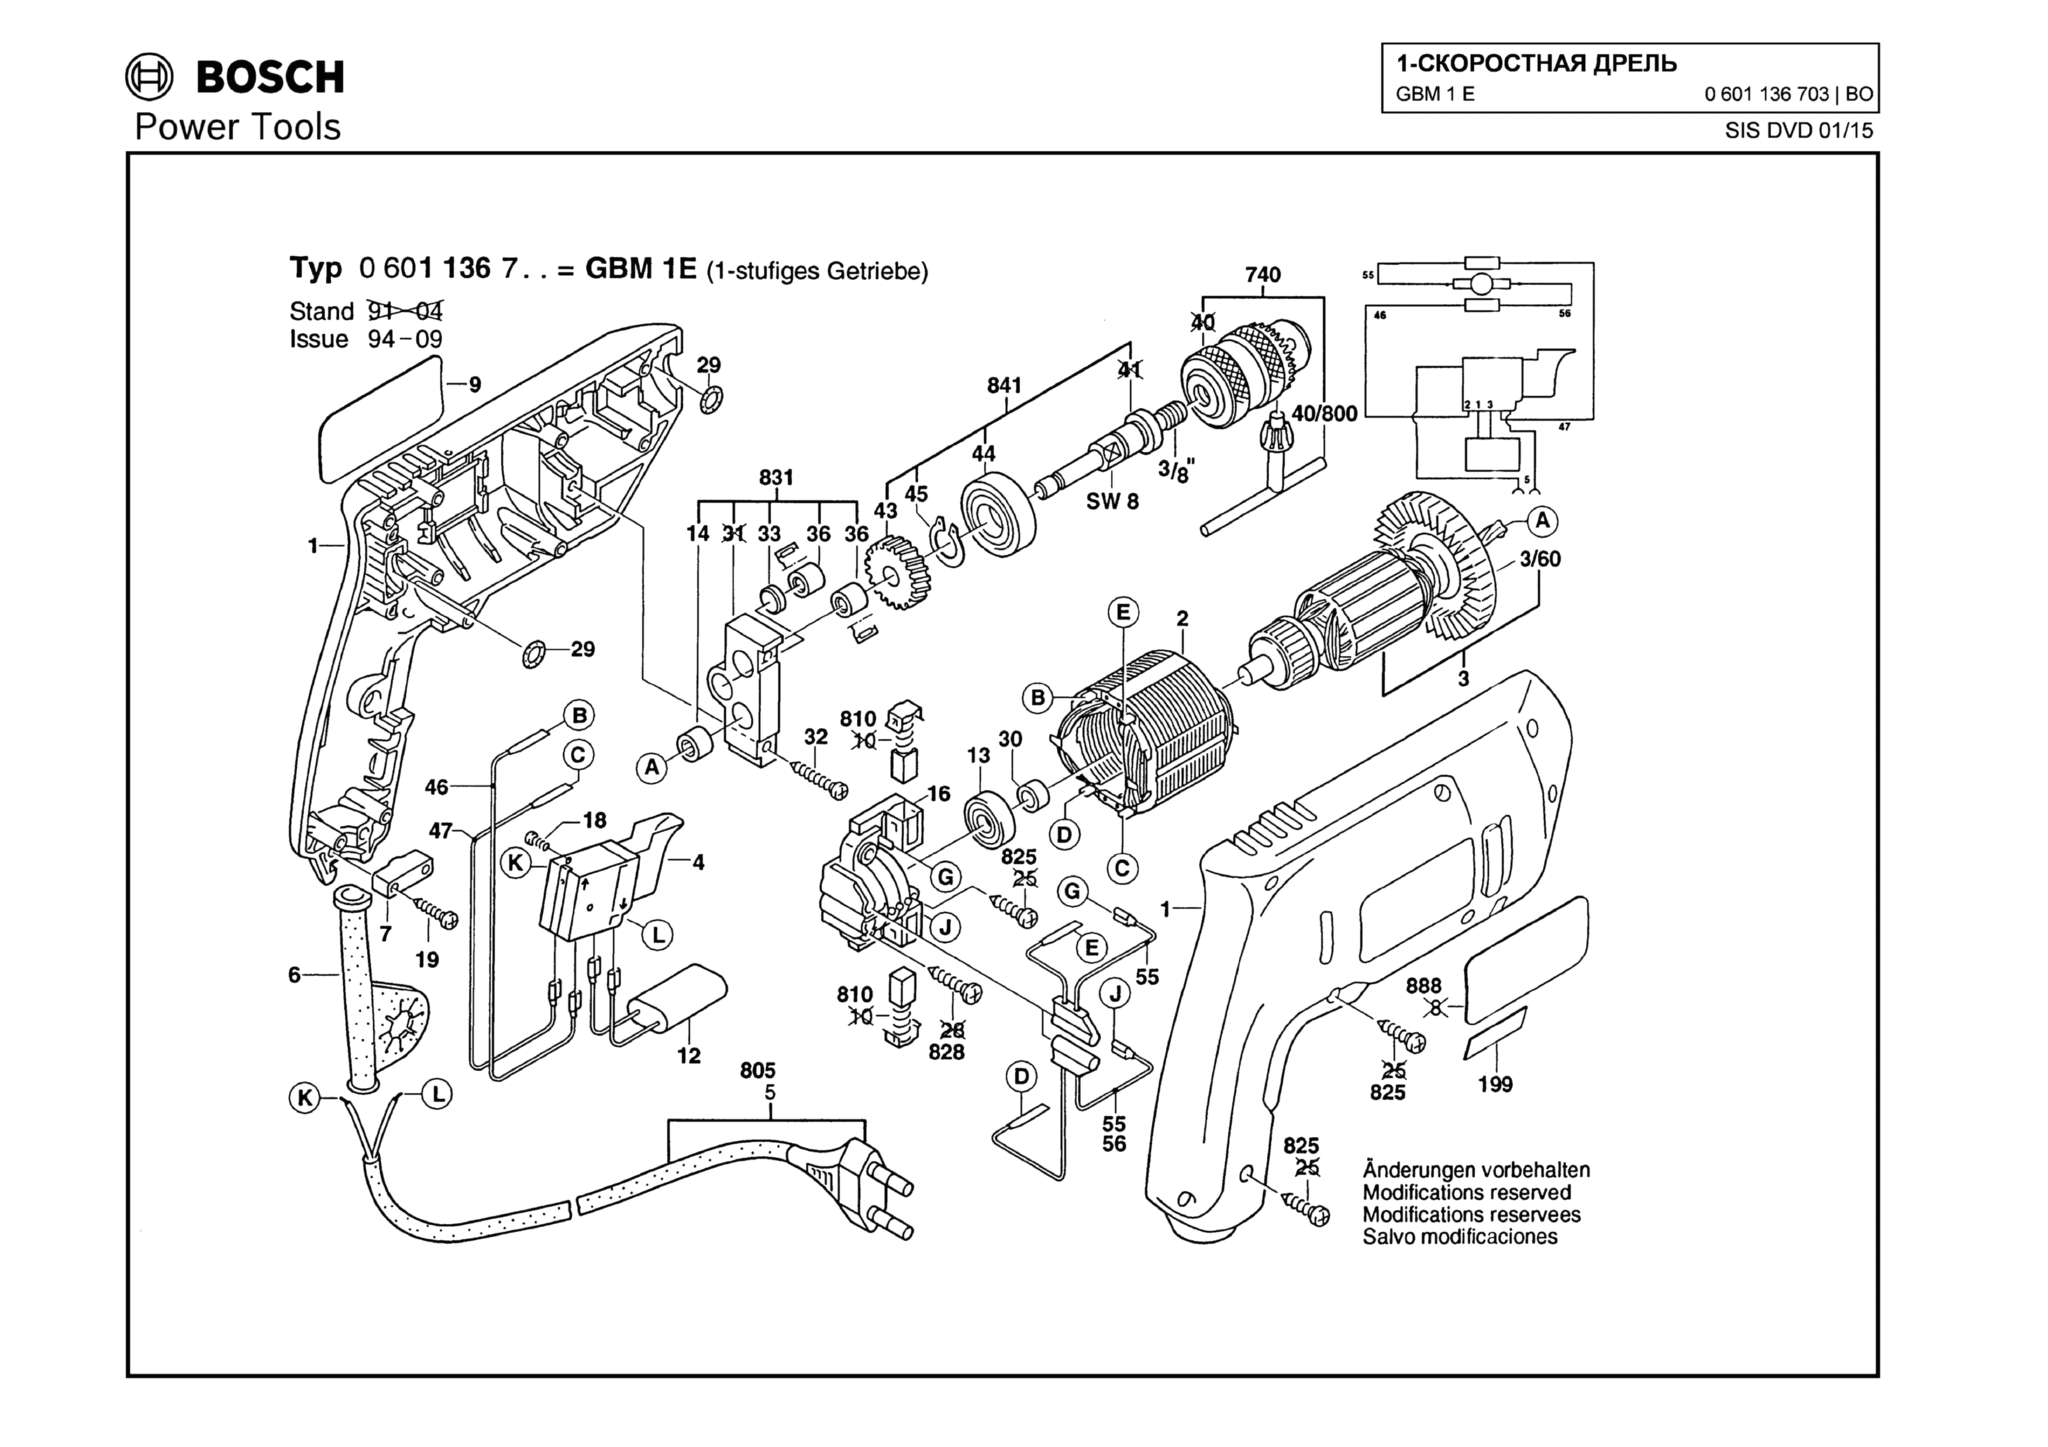 Запчасти, схема и деталировка Bosch GBM 1 E (ТИП 0601136703)